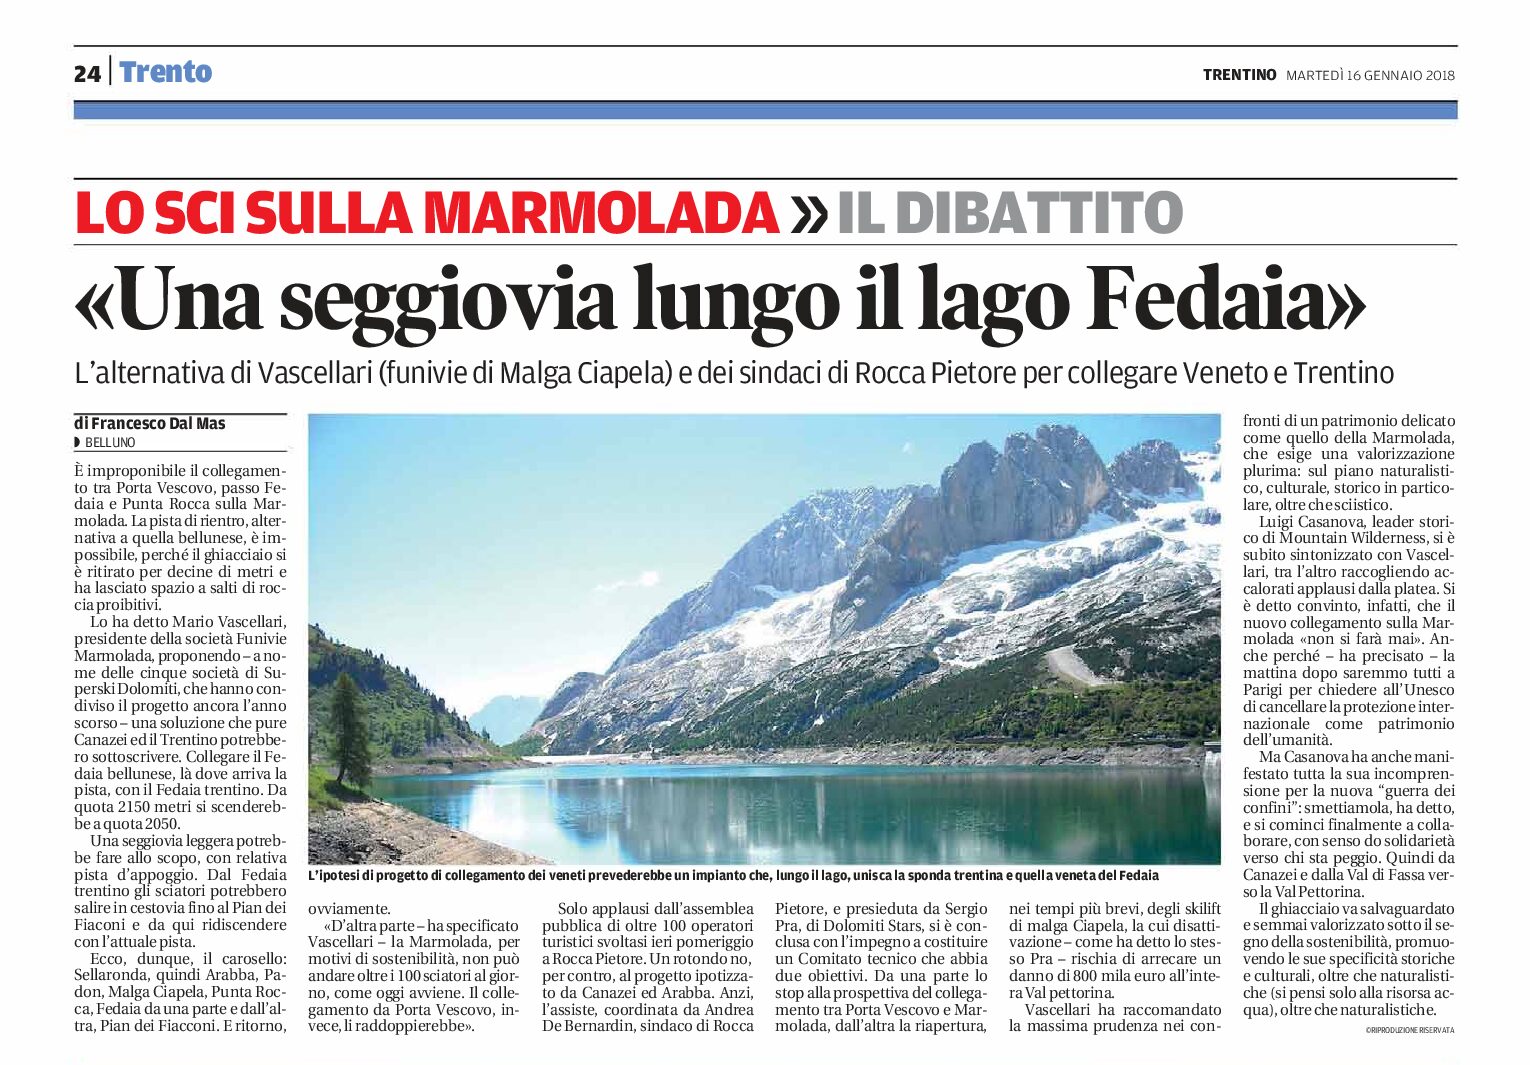 Marmolada: una seggiovia lungo il lago Fedaia, per collegare Veneto e Trentino